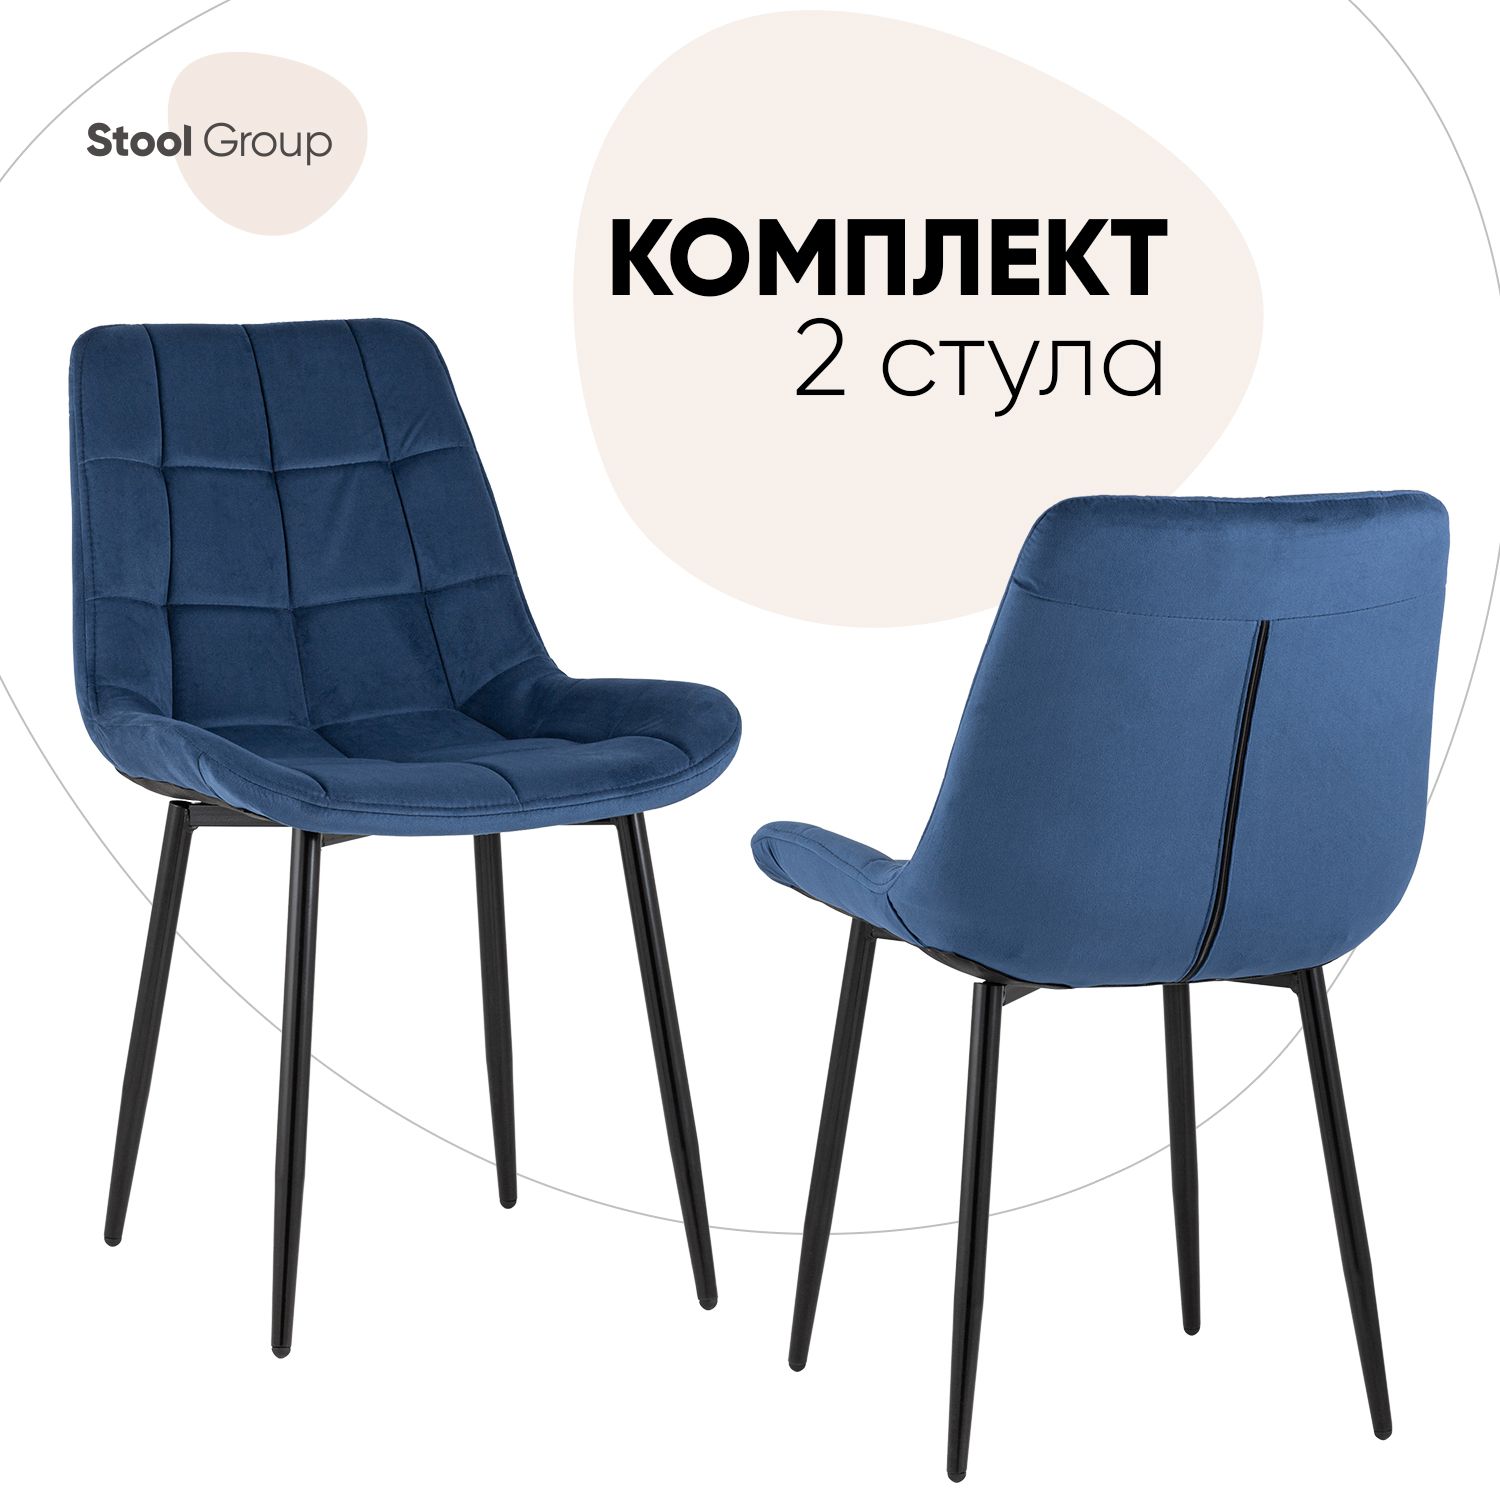 Стул для кухни Stool Group Флекс 2 шт, синий - купить в Москве, цены на Мегамаркет | 600015339510